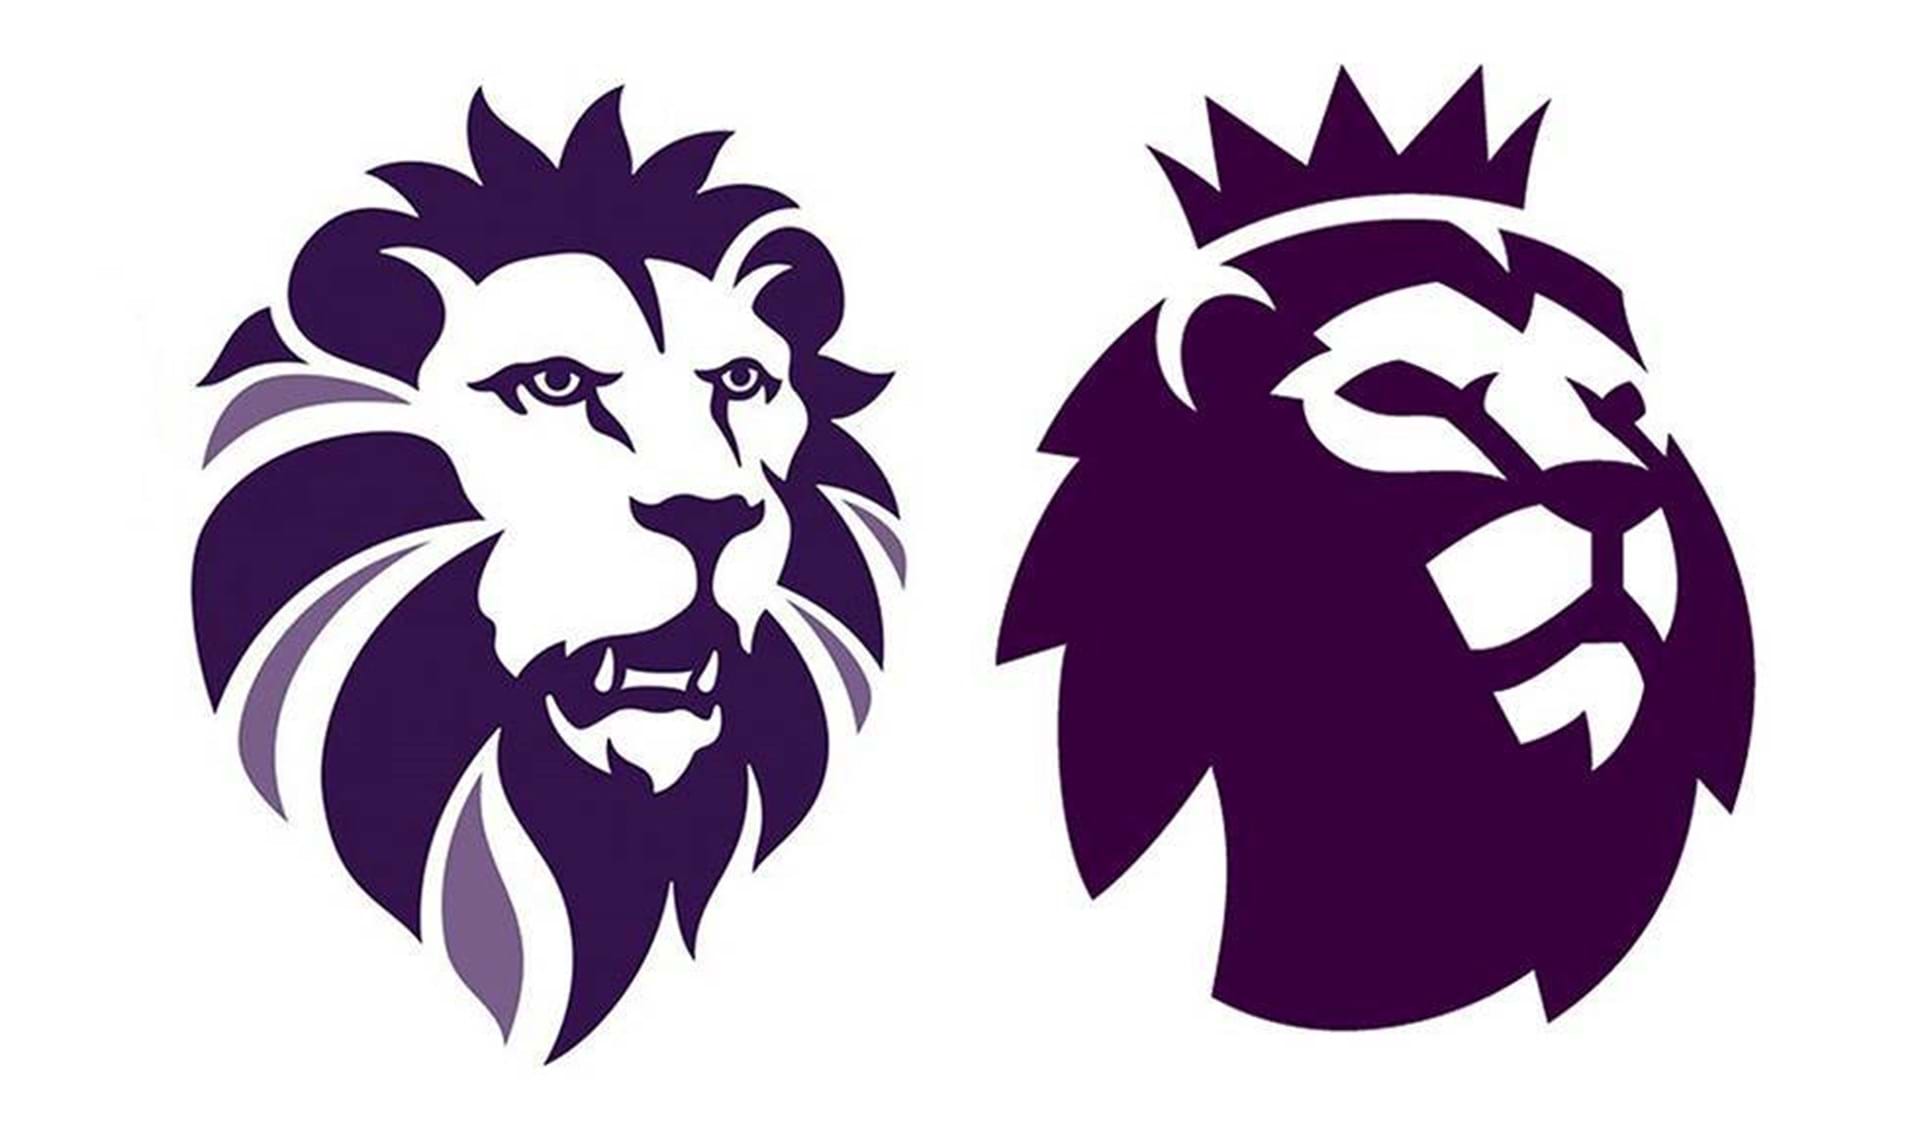 Rejsende Rykke kost Fodboldfans raser: Det EU-fjendtlige parti UKIP har stjålet PL-logo -  Euroman